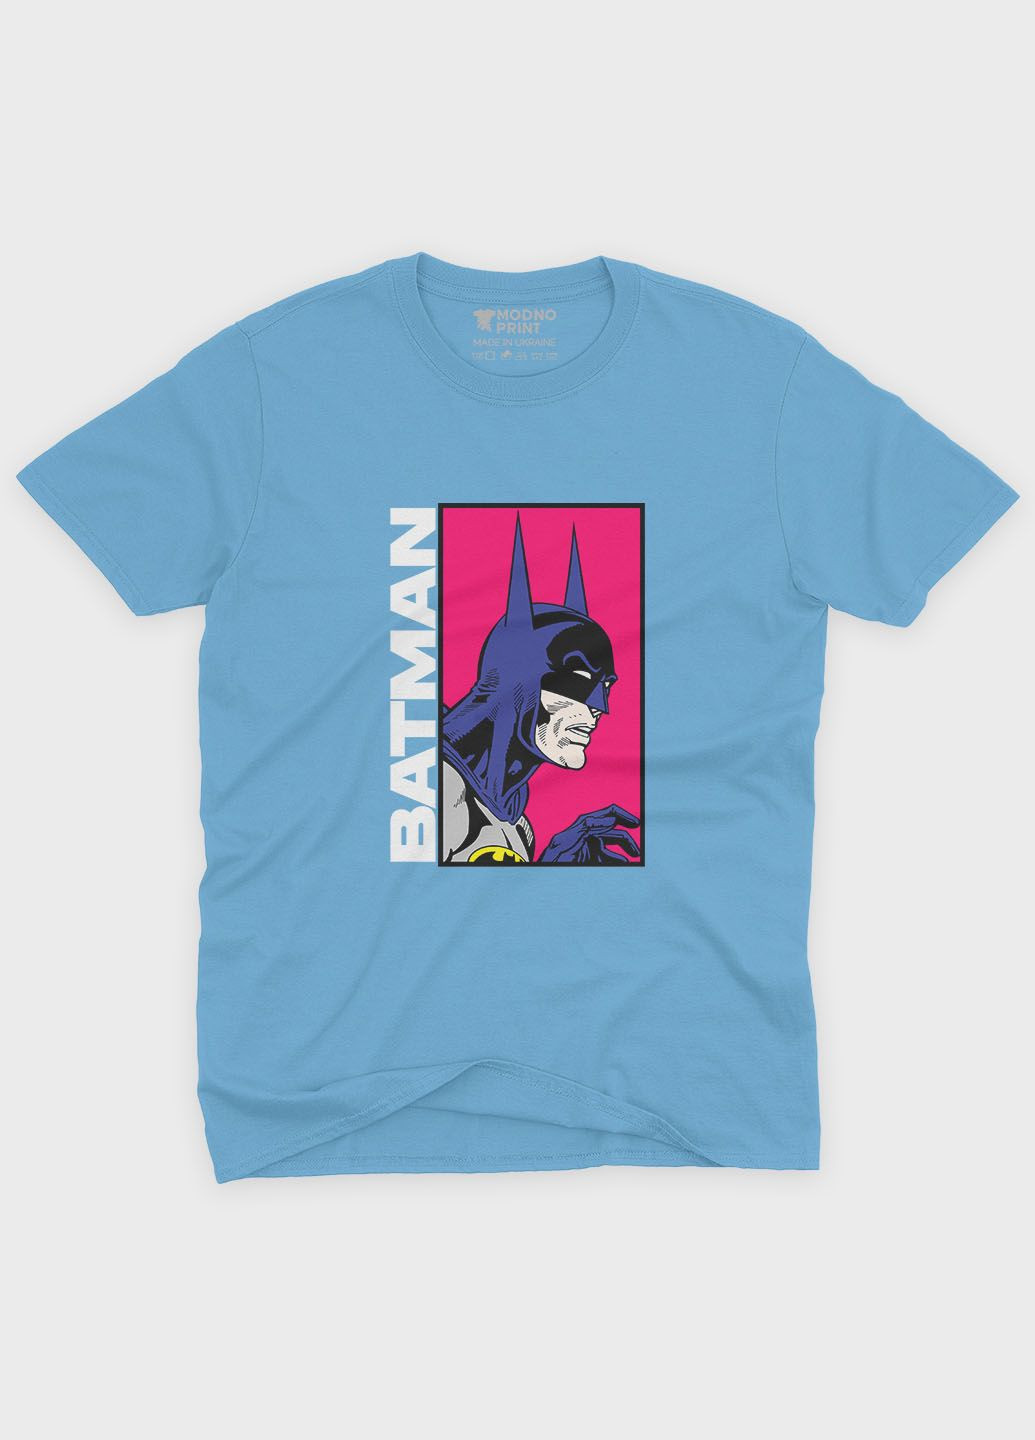 Голубая демисезонная футболка для девочки с принтом супергероя - бэтмен (ts001-1-lbl-006-003-024-g) Modno